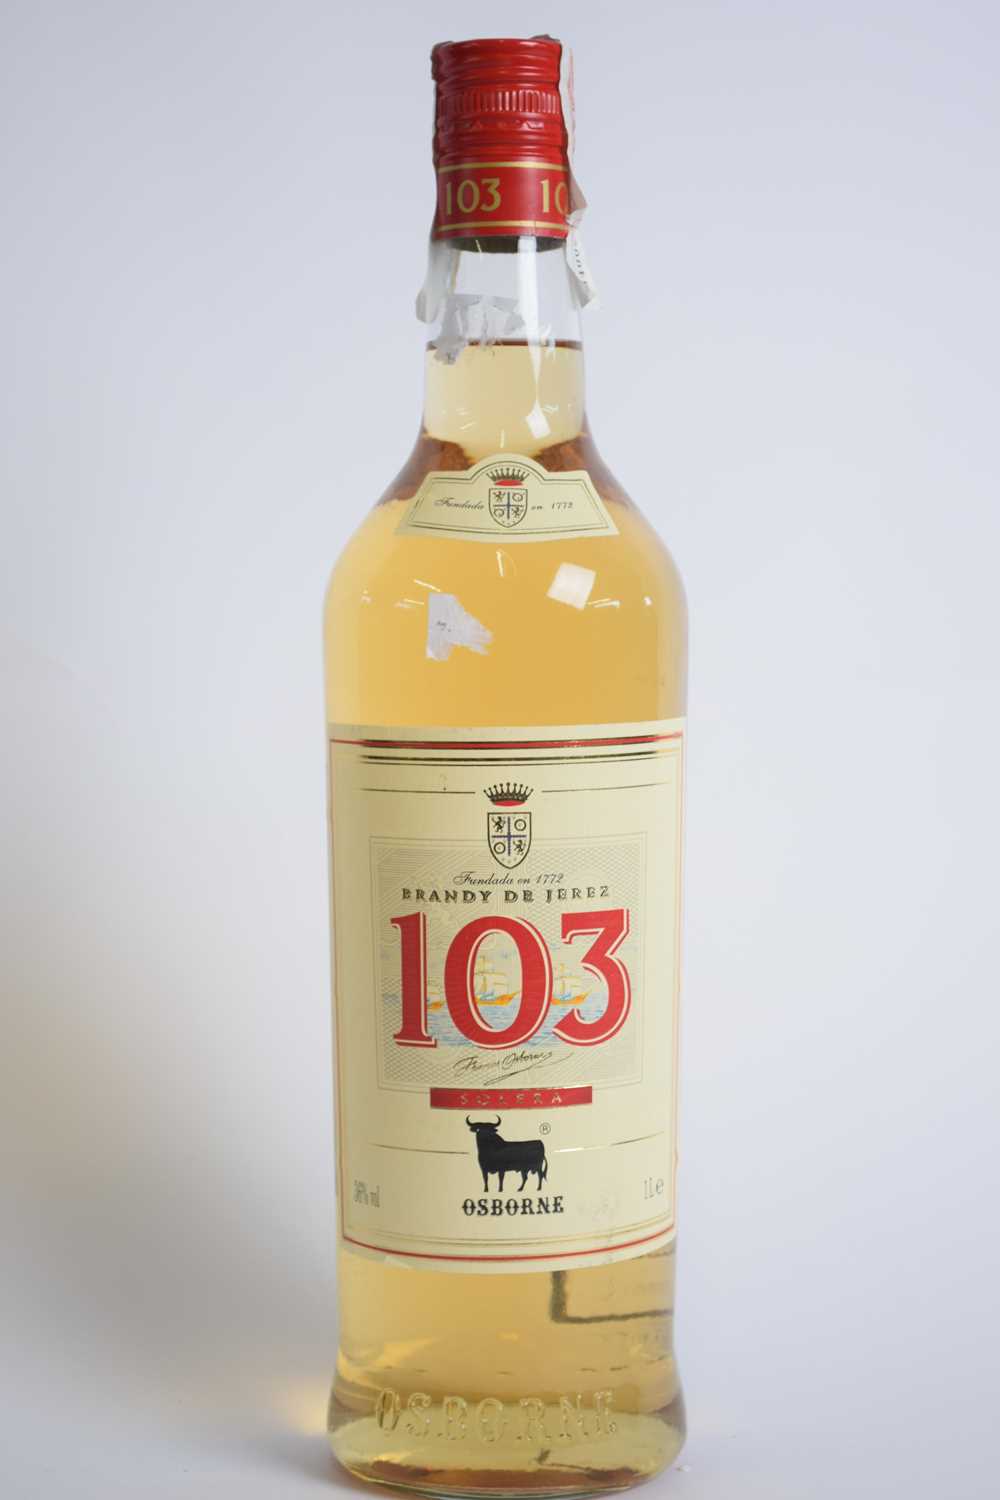 One bottle Brandy de Jerez, 103 Solera, 1 ltr - Image 2 of 3